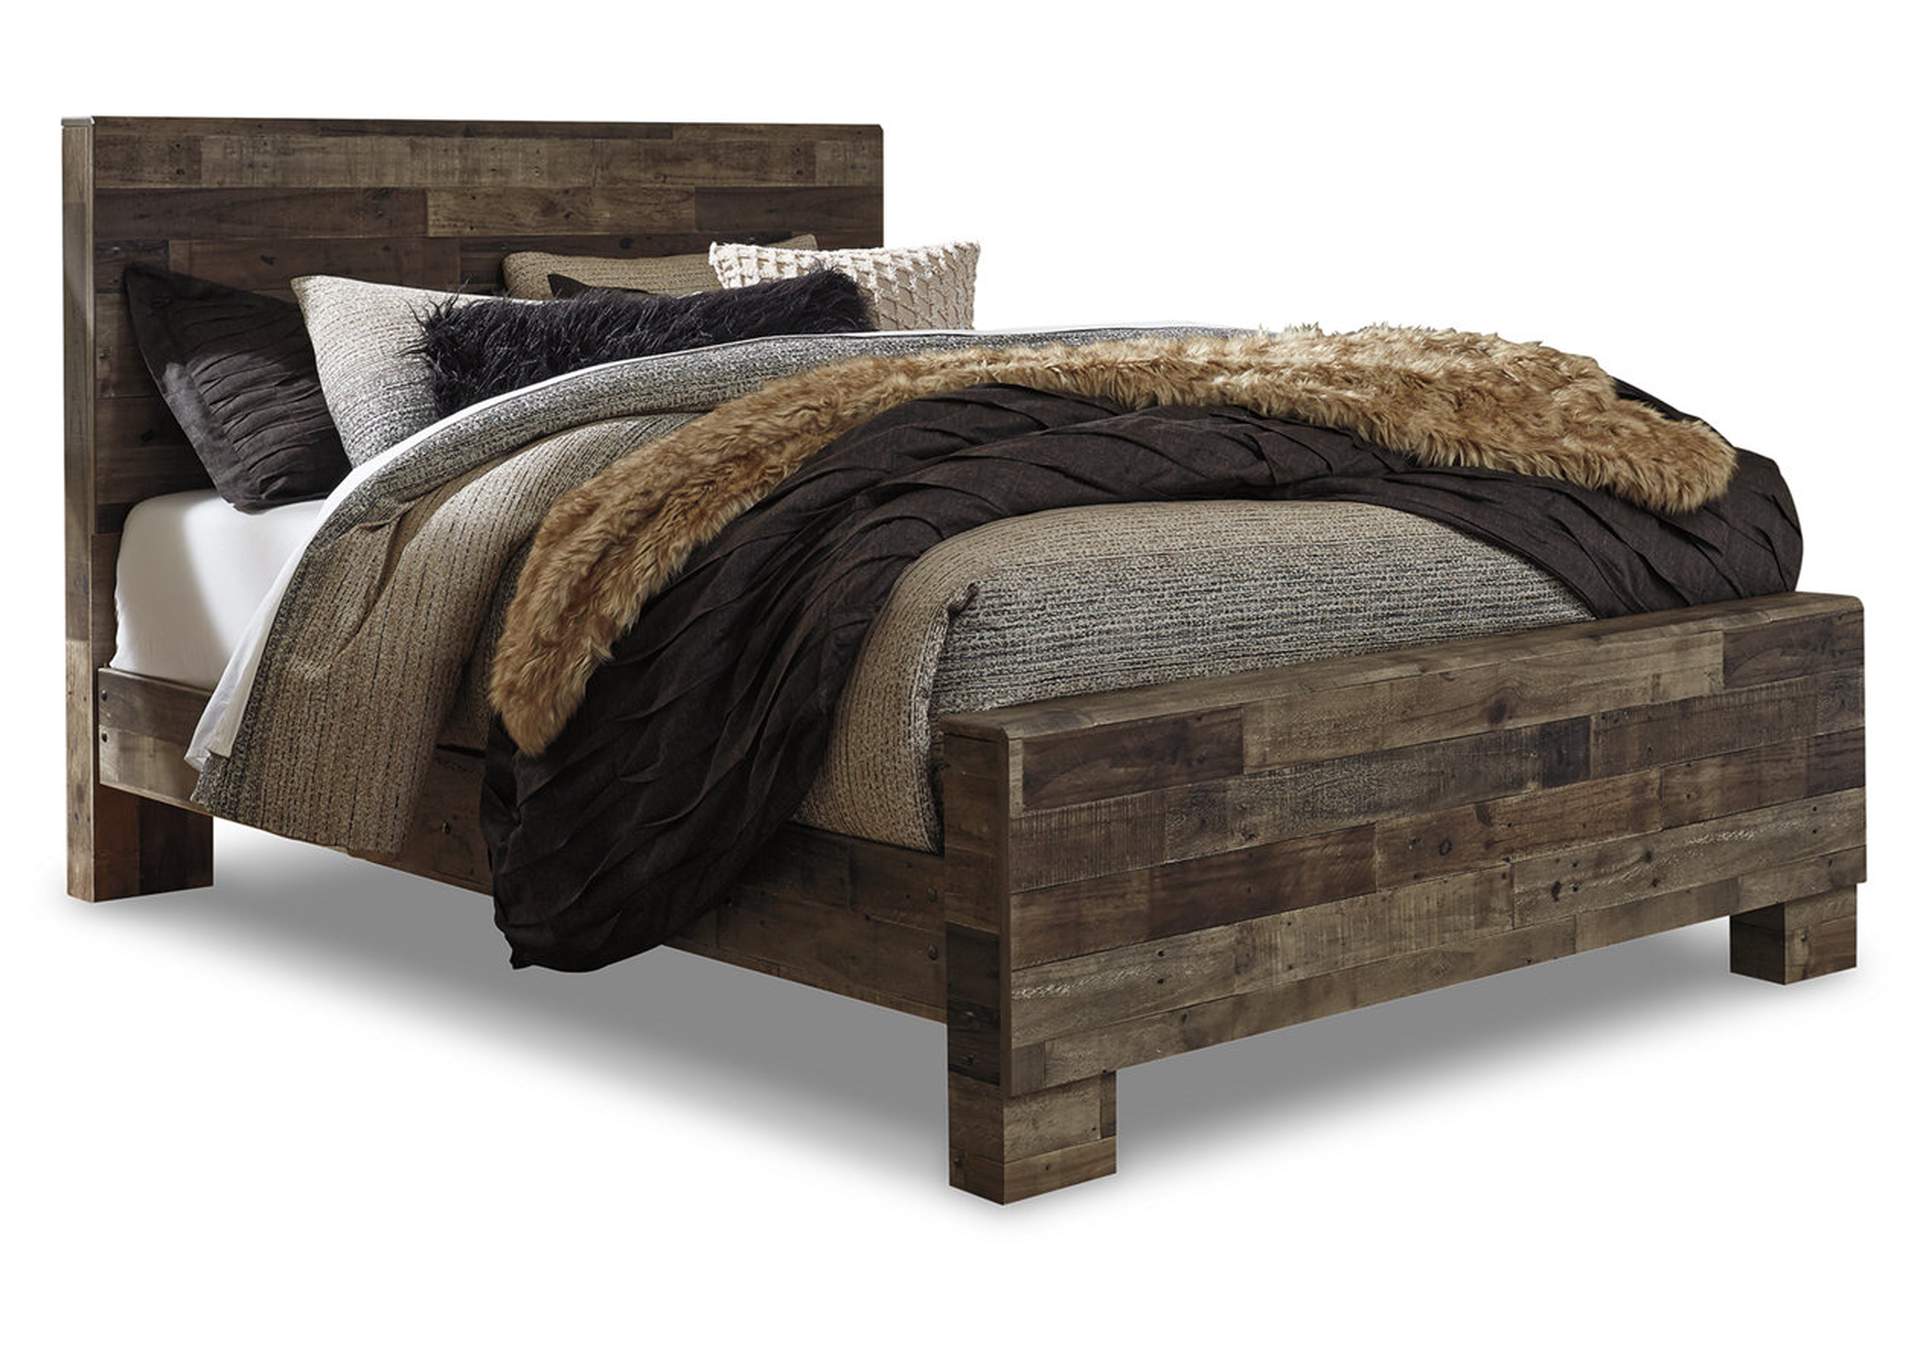 Derekson Queen Panel Bed with Dresser,Benchcraft